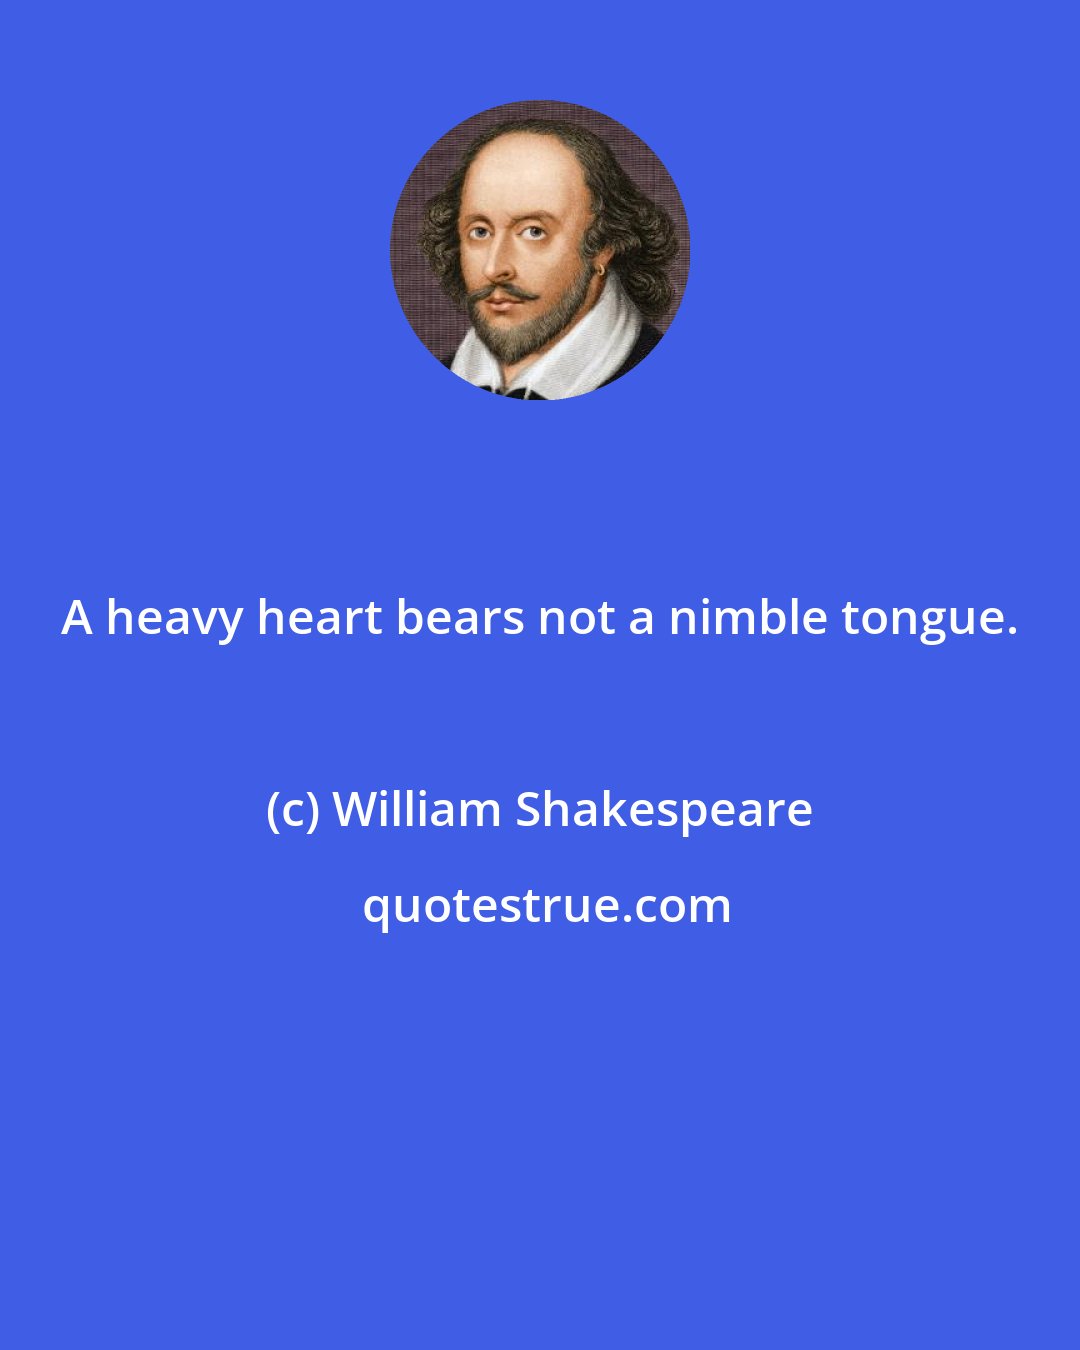 William Shakespeare: A heavy heart bears not a nimble tongue.